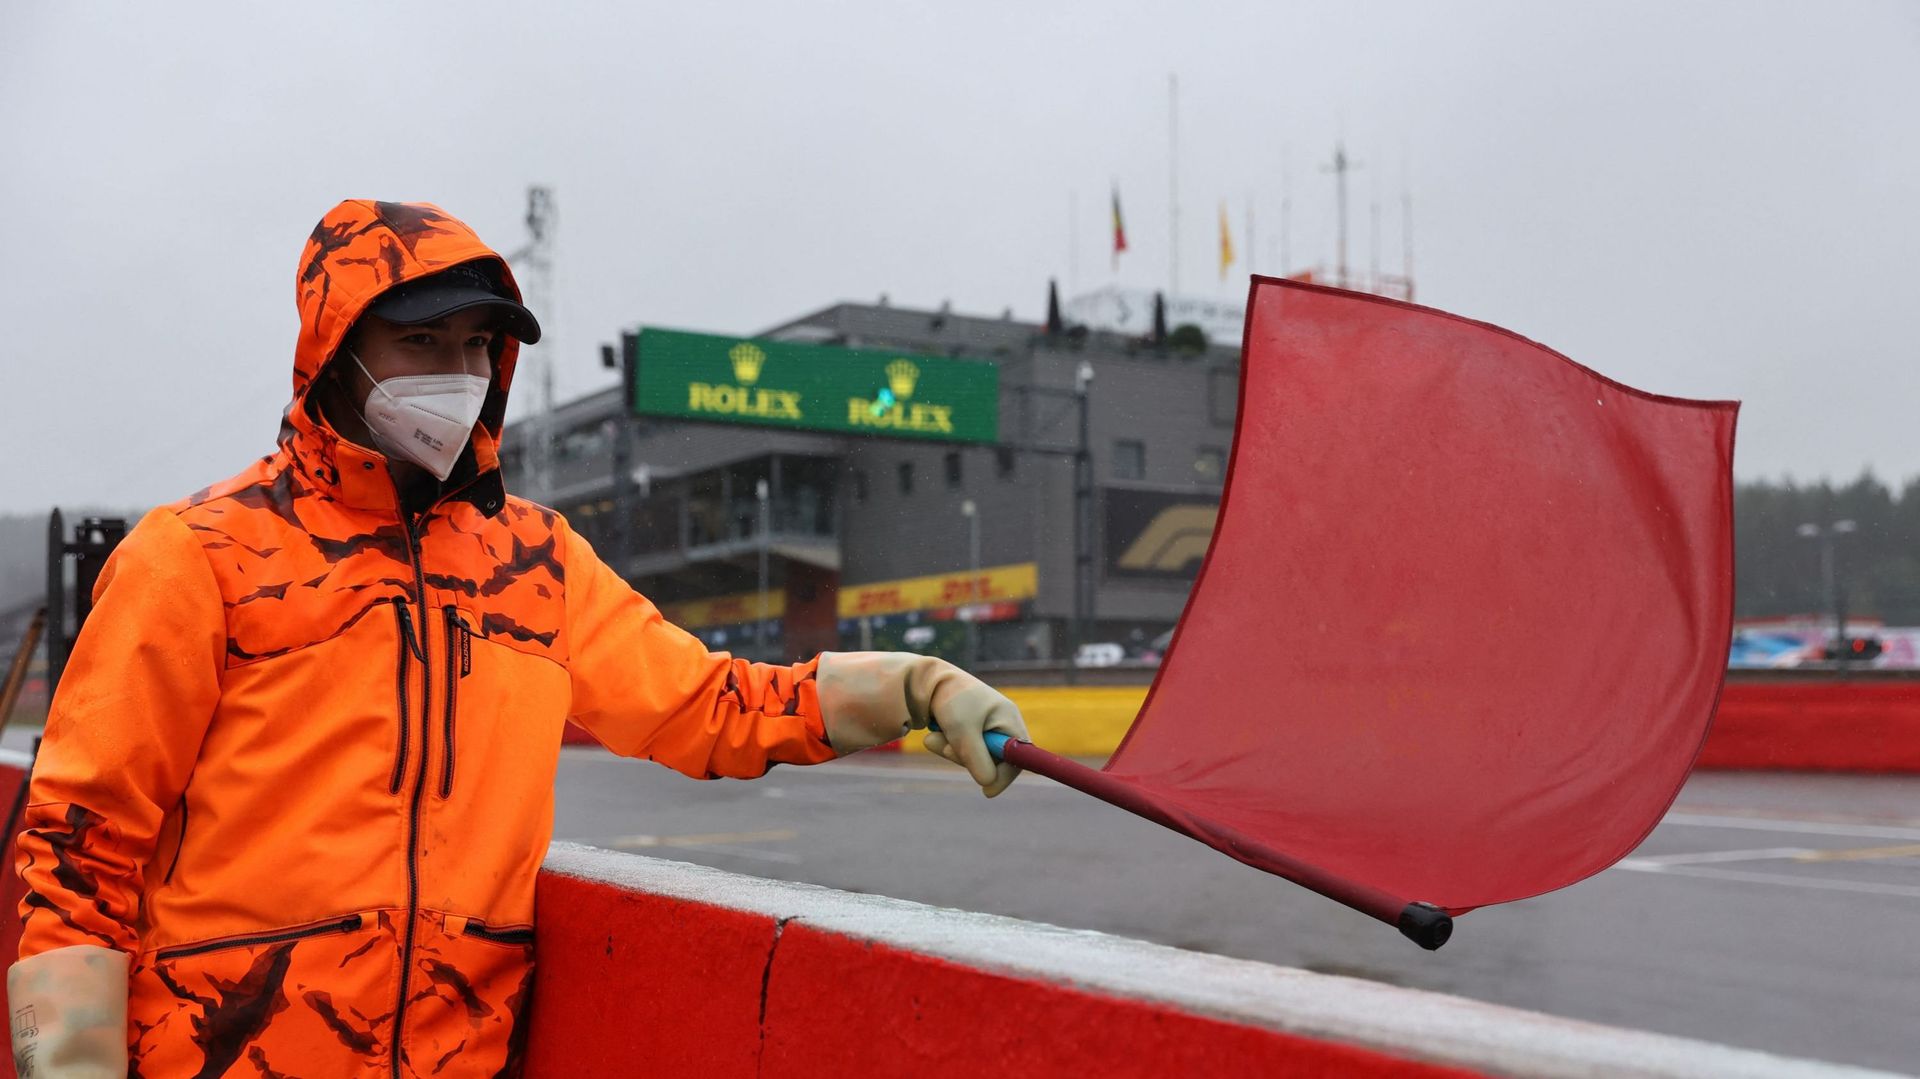 En consacrant Max Verstappen vainqueur du Grand Prix de Belgique après deux tours seulement au ralenti, derrière la voiture de sécurité, sous le déluge qui s’abattait à Spa-Francorchamps, la Formule 1 s’est décrédibilisée aux yeux du public et a soulevé n